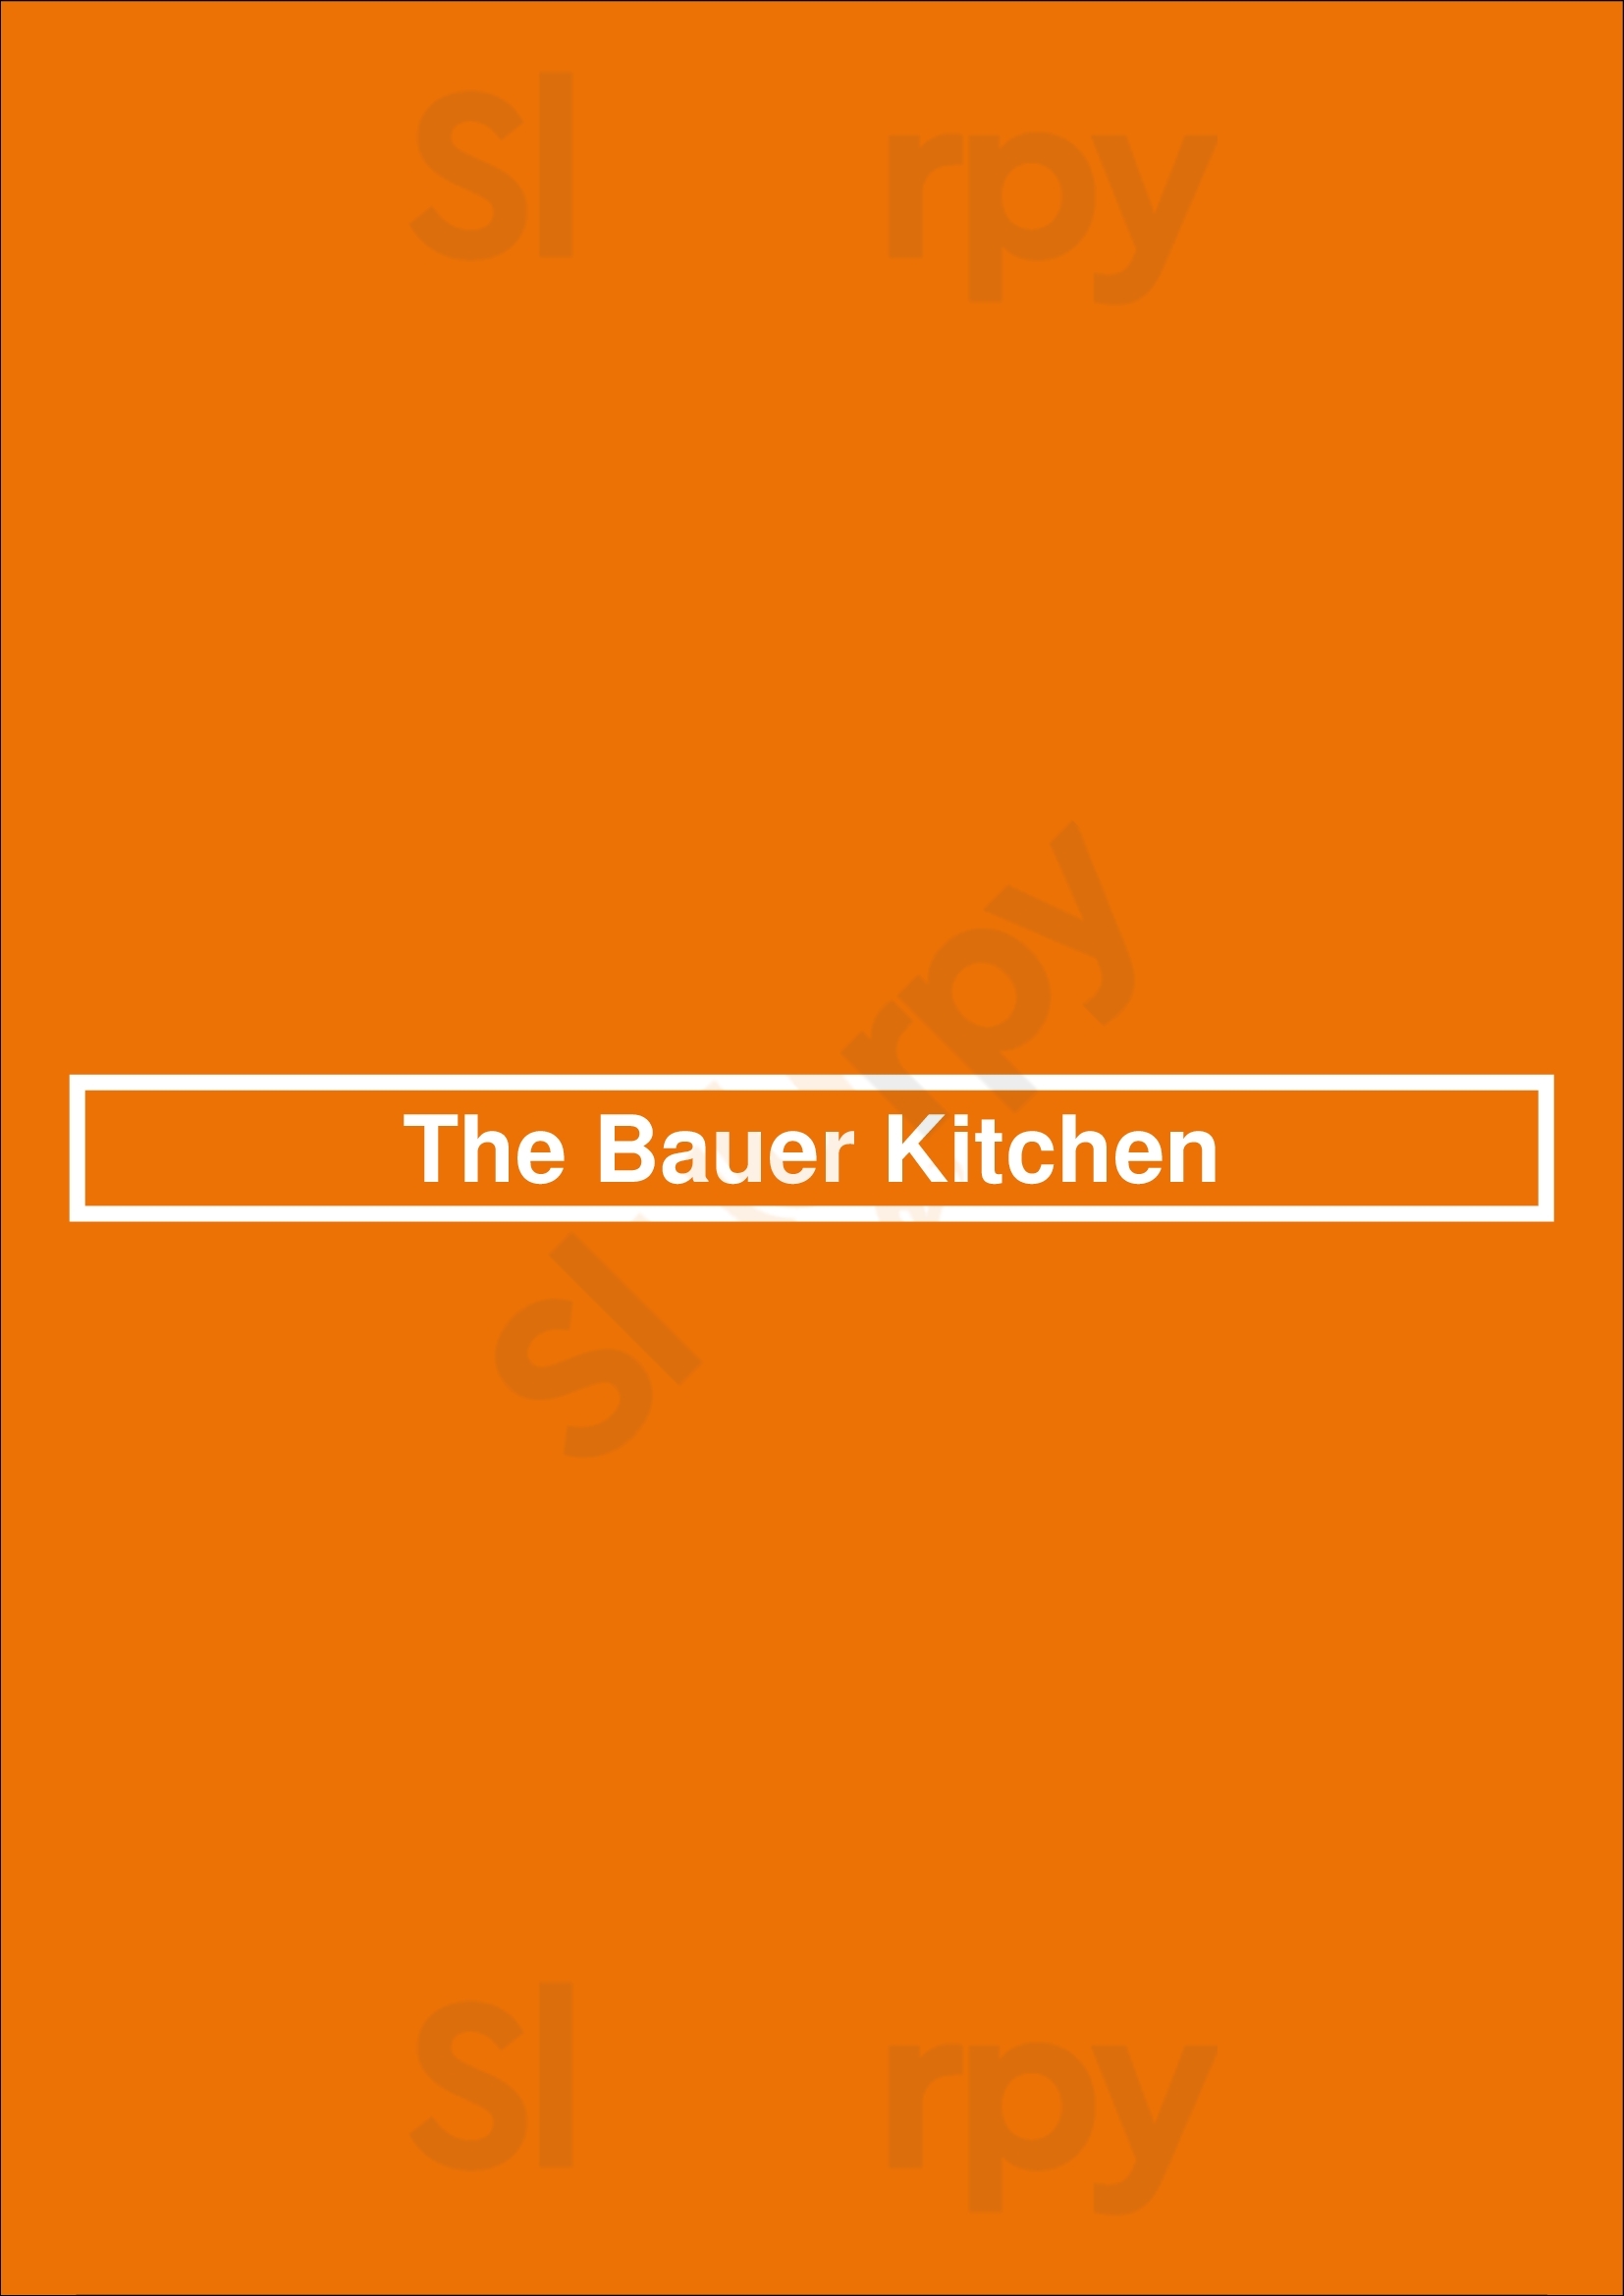 The Bauer Kitchen Waterloo Menu - 1